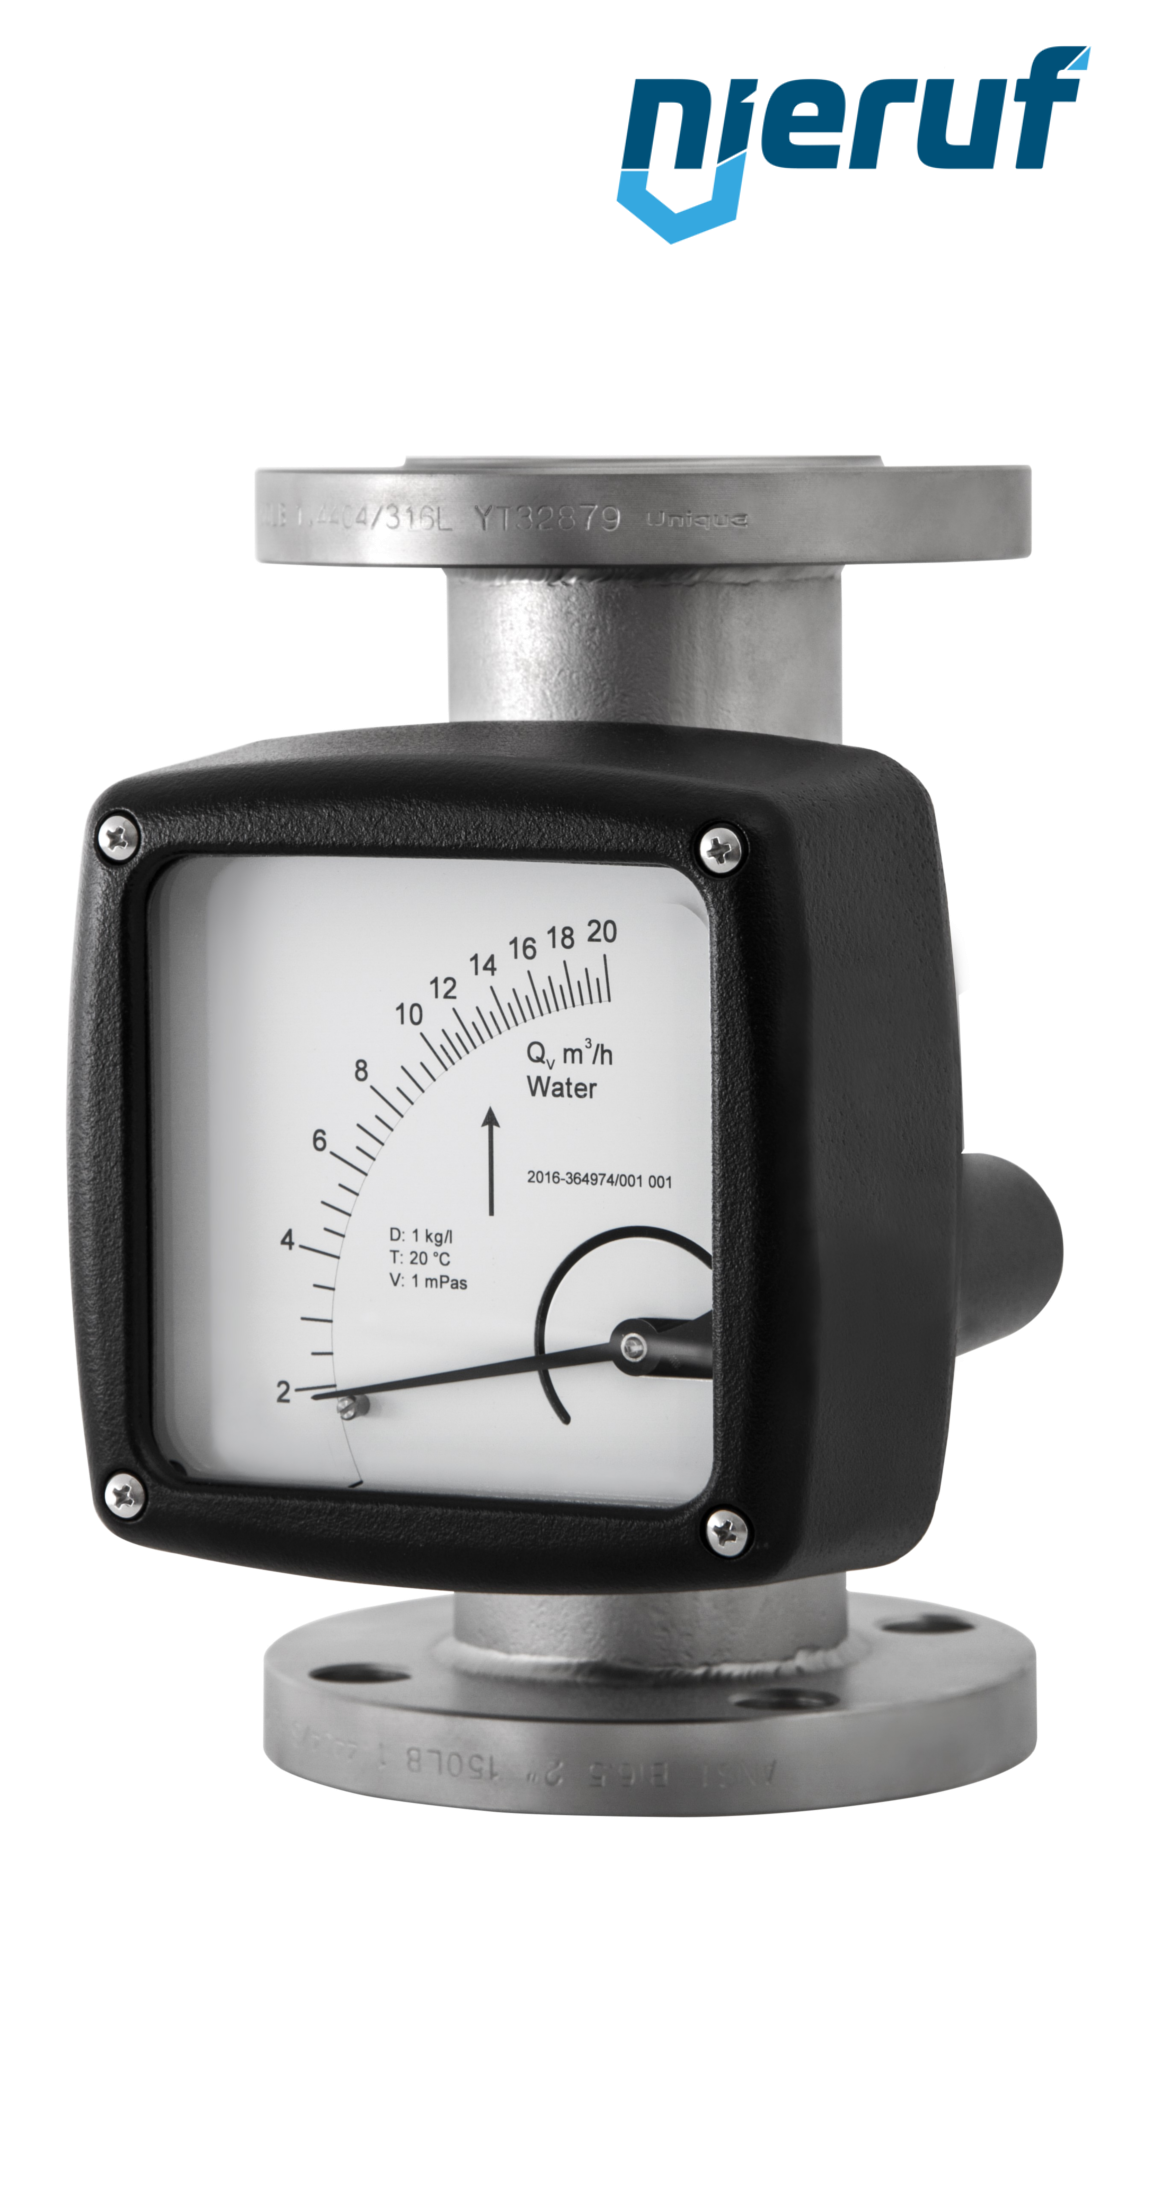 misuratore di portata / flussometro flangiato DN32-attacco 0,15 - 1,5 m3/h tubo DN15 aria